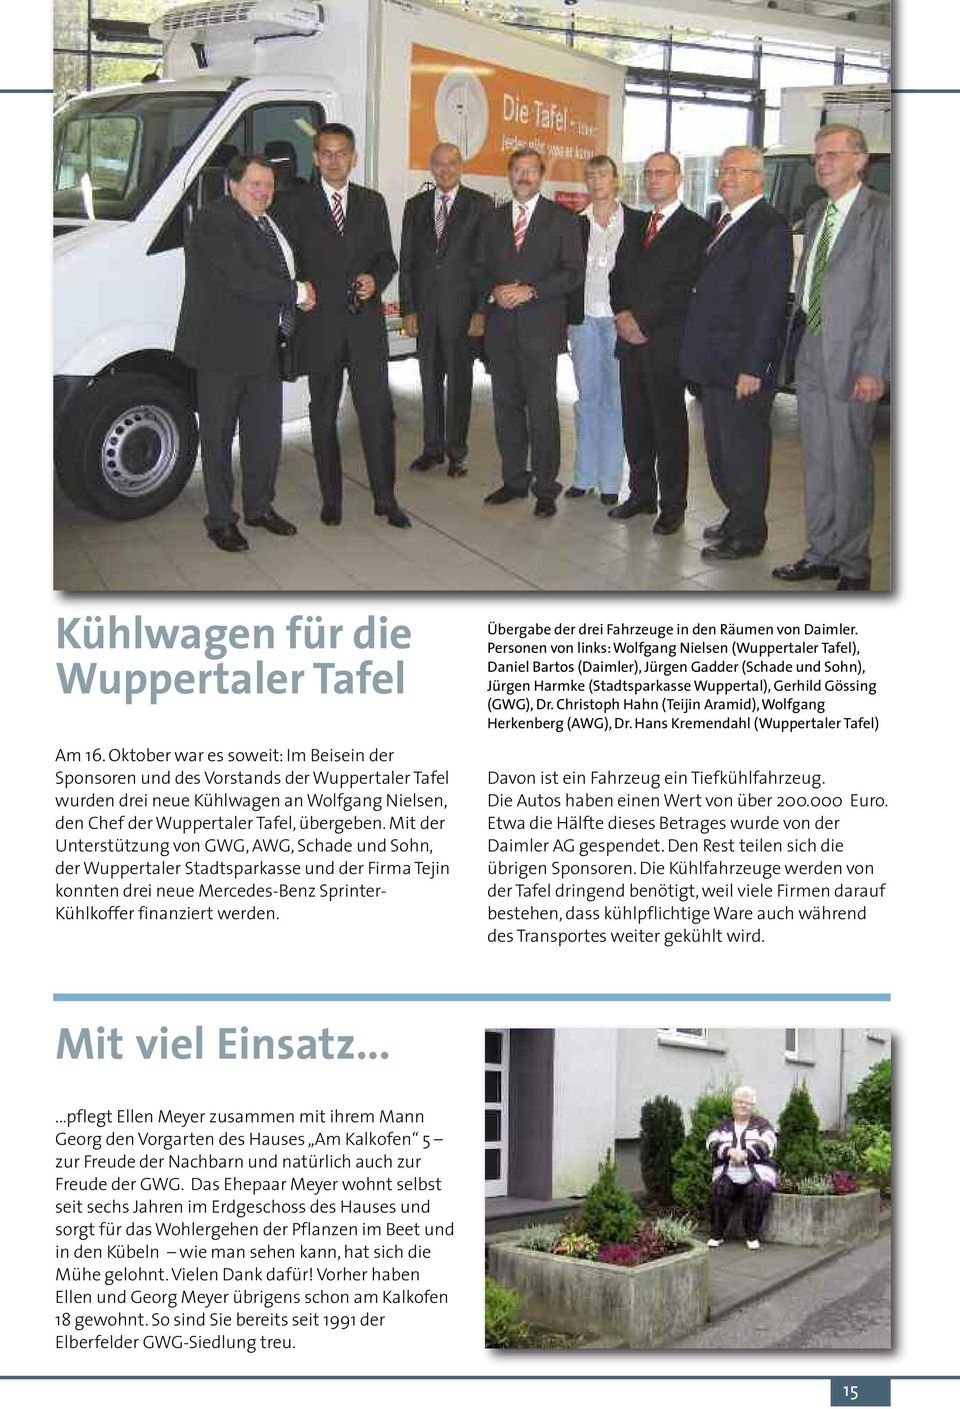 Mit der Unterstützung von GWG, AWG, Schade und Sohn, der Wuppertaler Stadtsparkasse und der Firma Tejin konnten drei neue Mercedes-Benz Sprinter- Kühlkoffer finanziert werden.